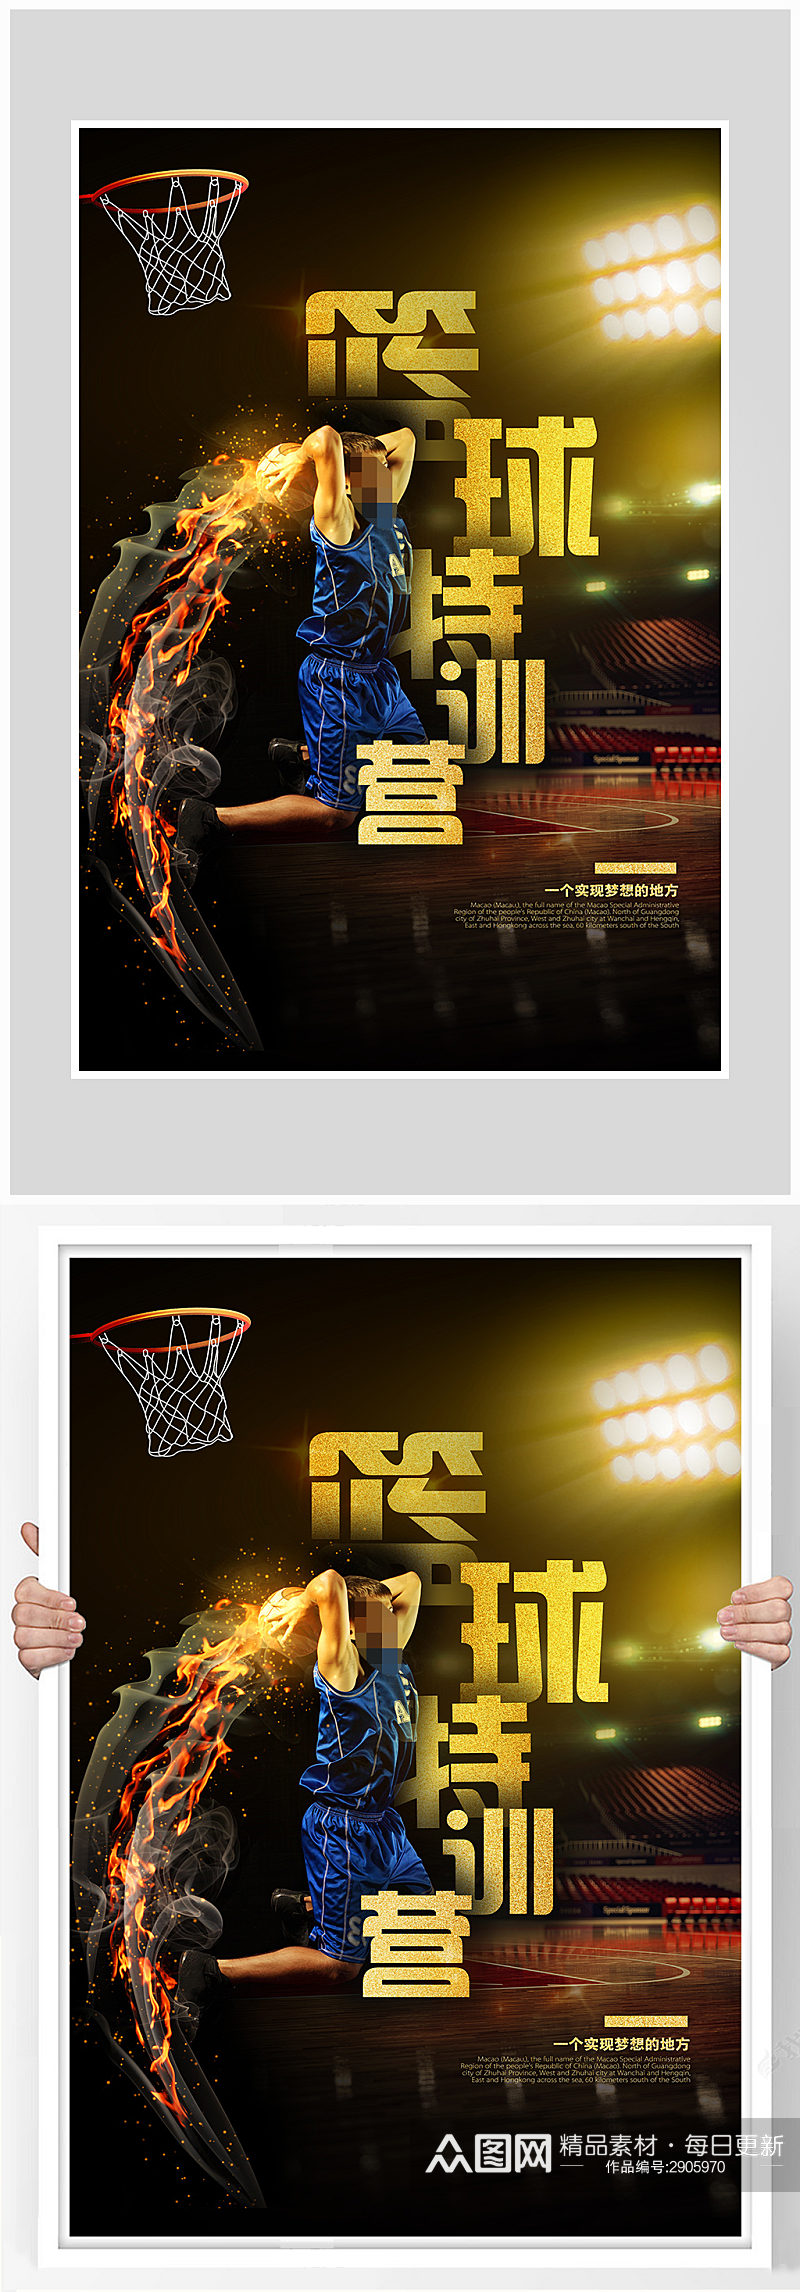 创意质感篮球训练海报设计素材